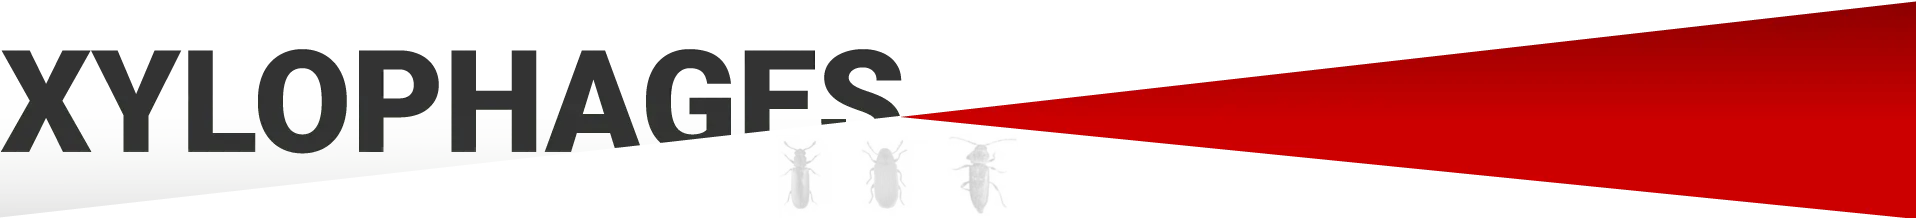 Traitement bois BLAYE Termites - Traitement bois contre les insectes à larves xylophages: capricorne des maisons, petite vrillette, grosse vrillette, lyctus, hespérophanes...